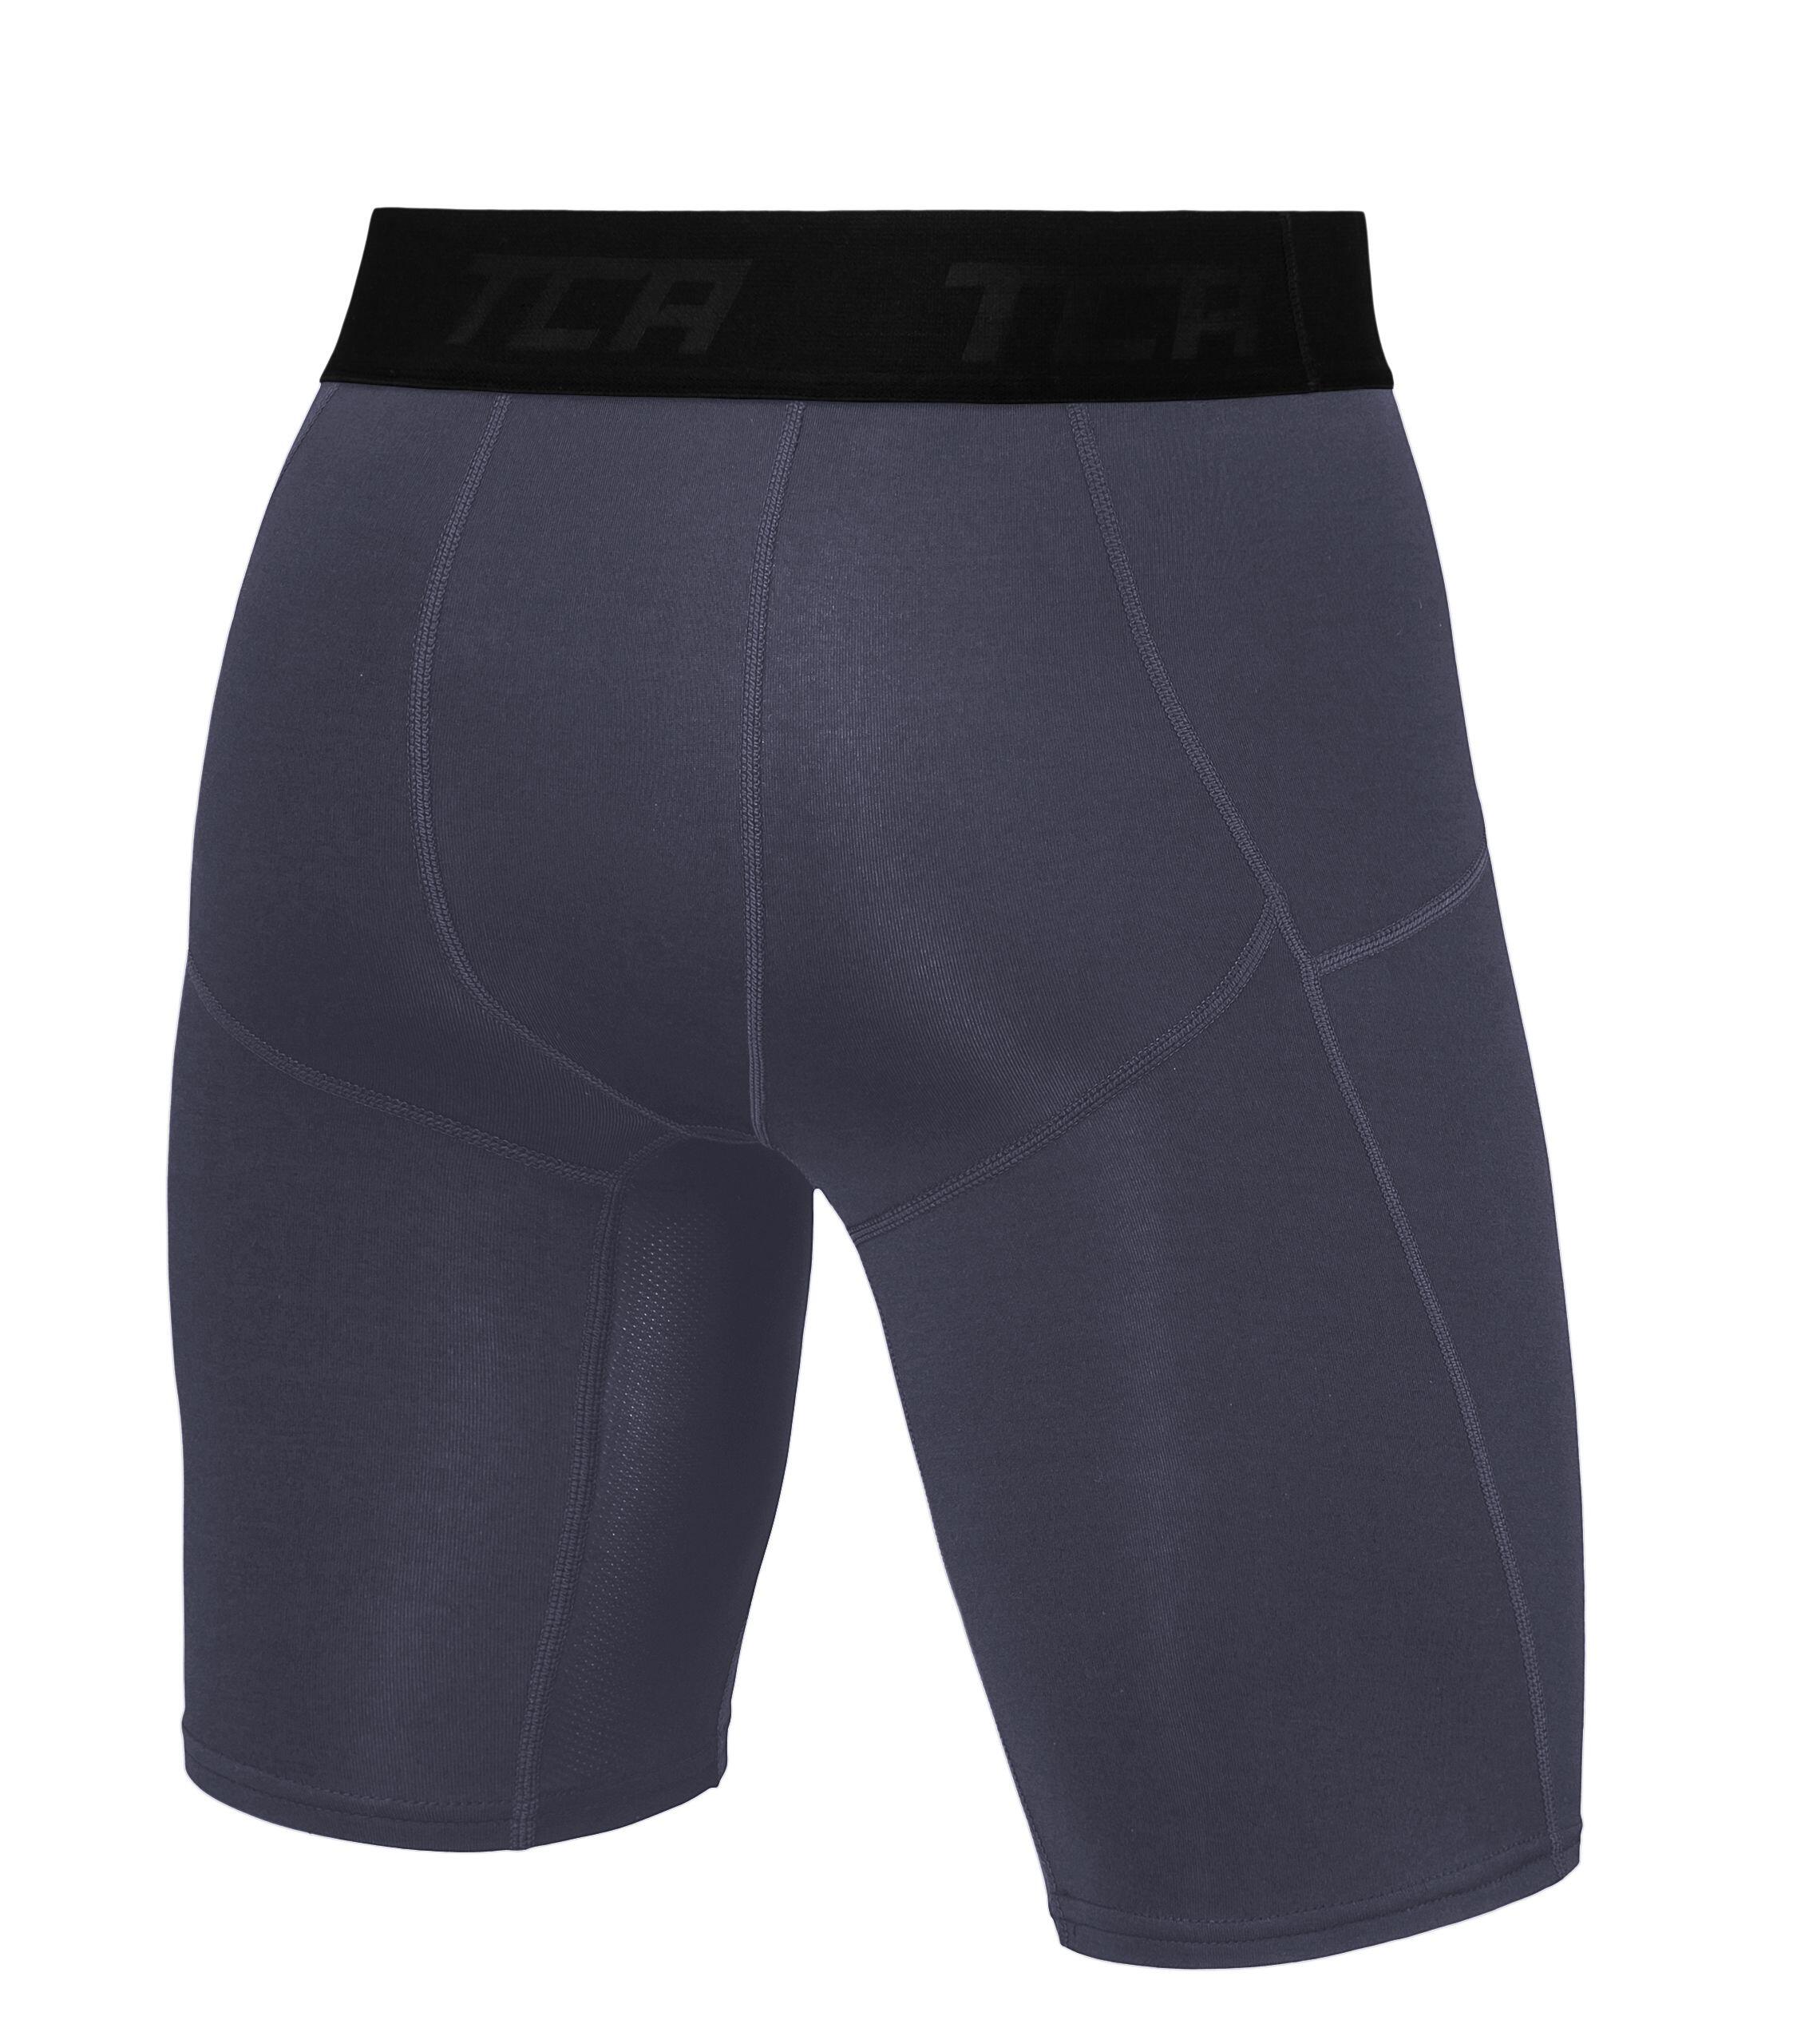 Men's Super Thermal Compression Shorts - Graphite 3/5